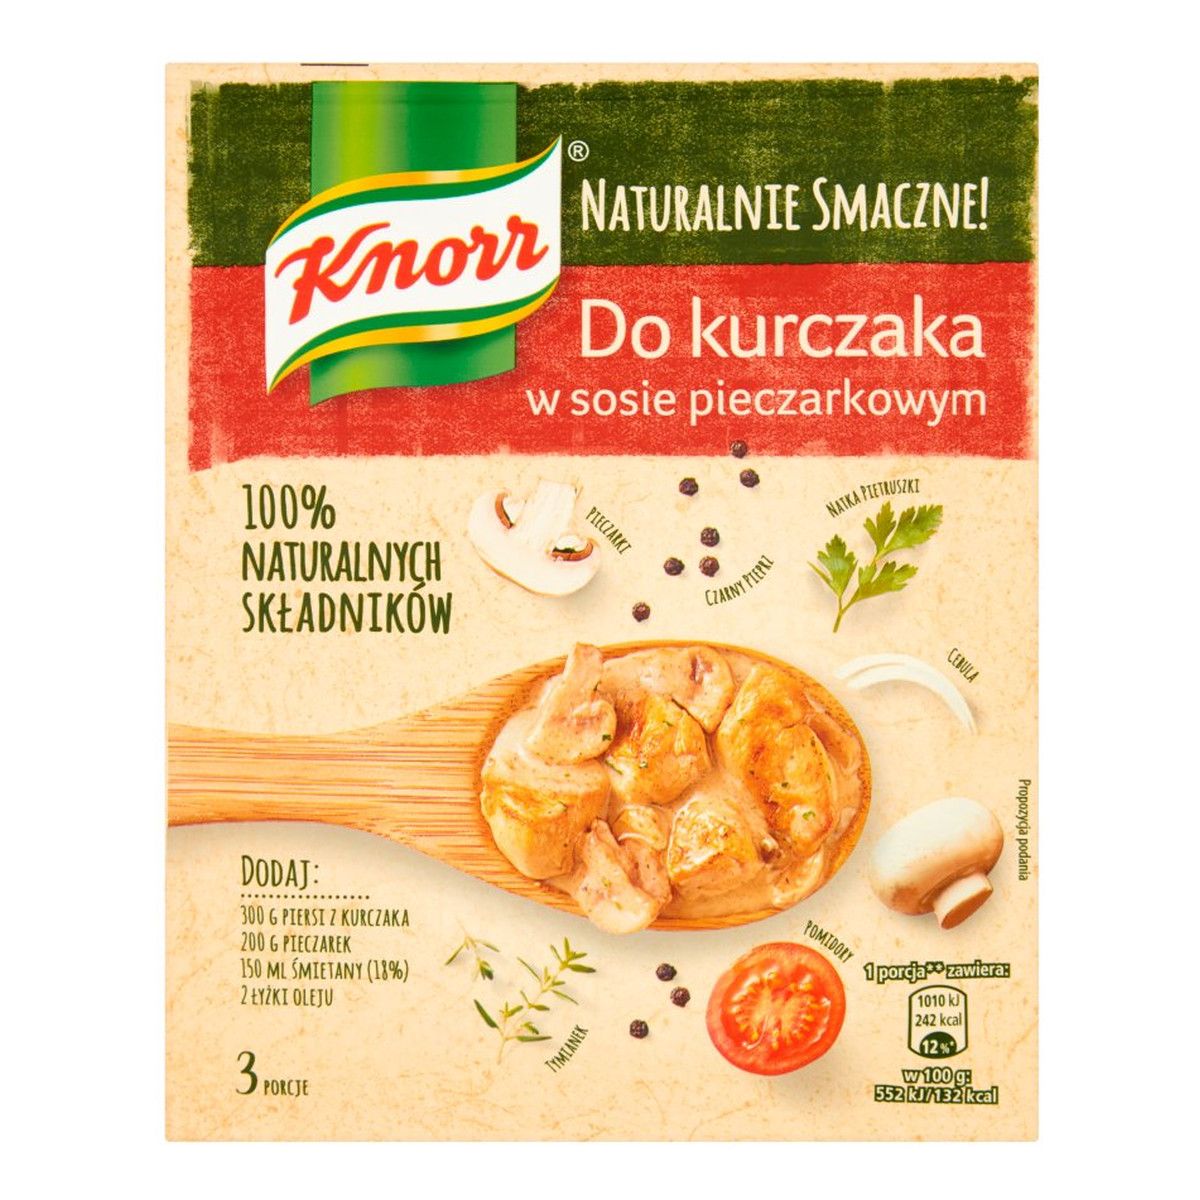 Knorr Naturalnie Smaczne! Fix do kurczaka w sosie pieczarkowym 32g